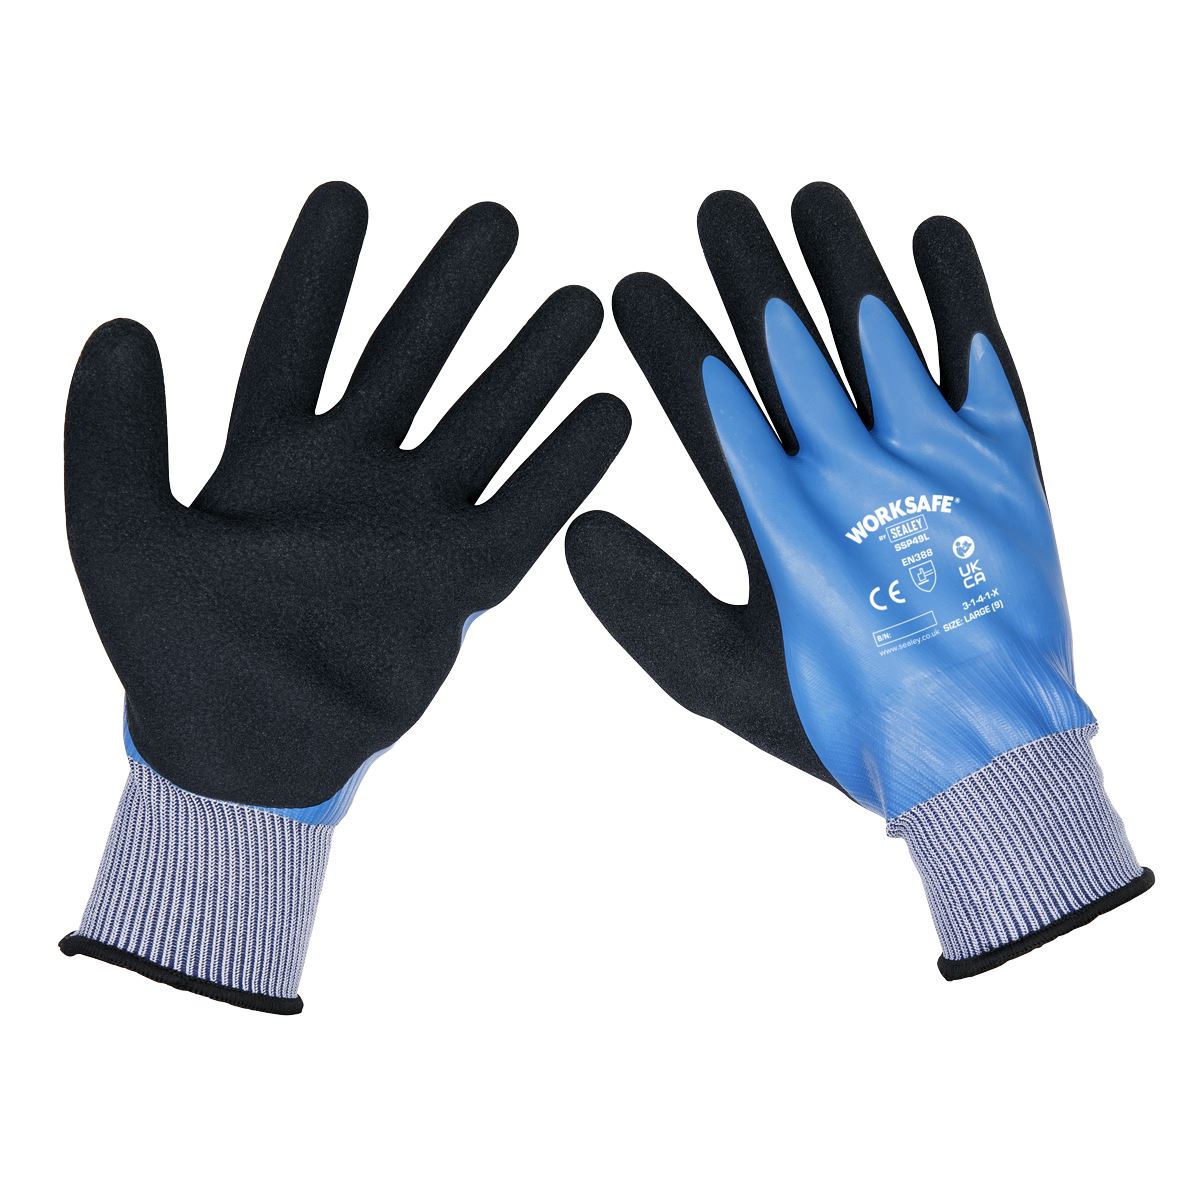 Worksafe by Sealey Waterproof Latex Gloves Large – Pair